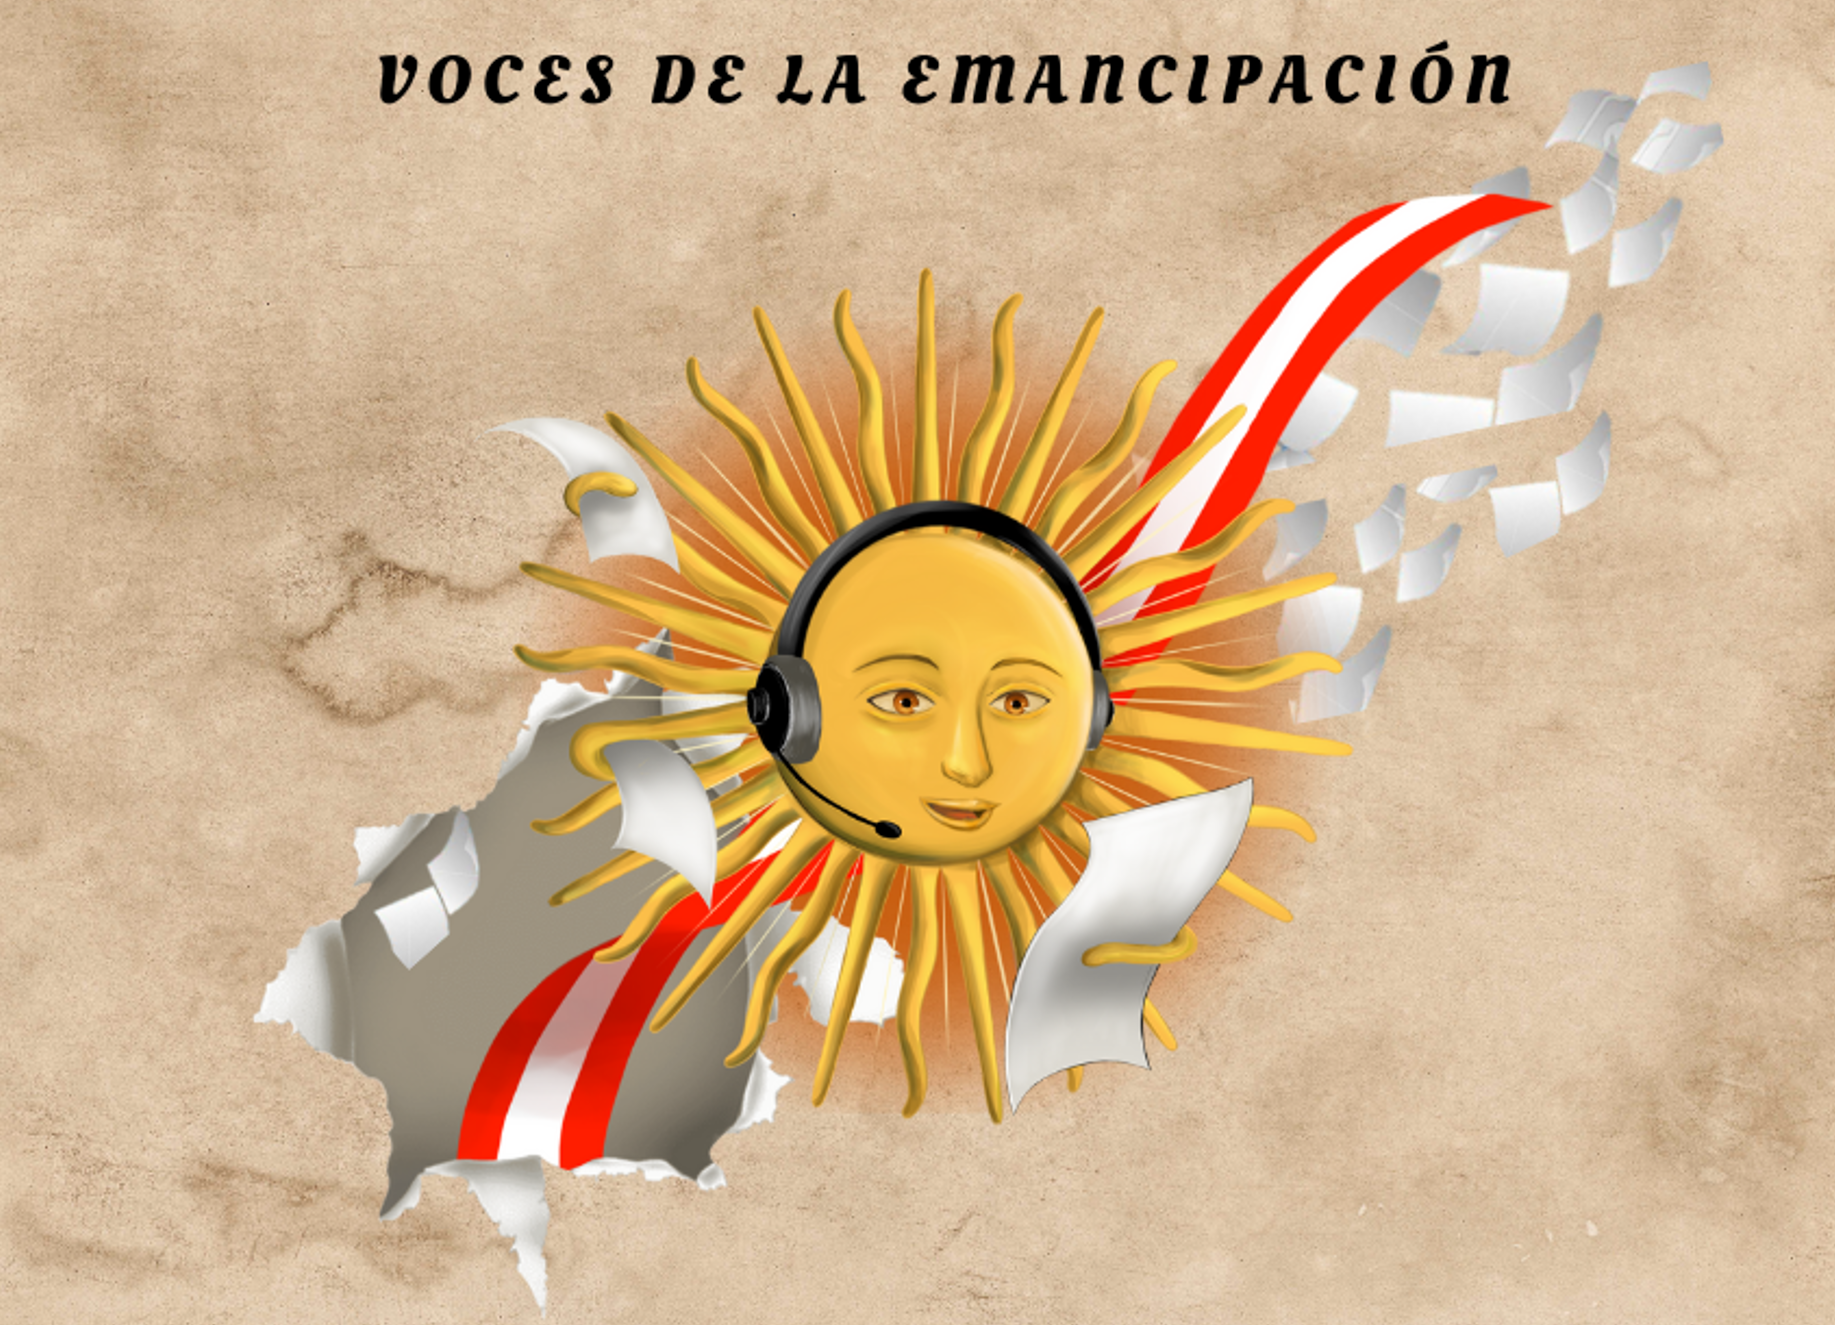 Podcast «Voces de la emancipación»